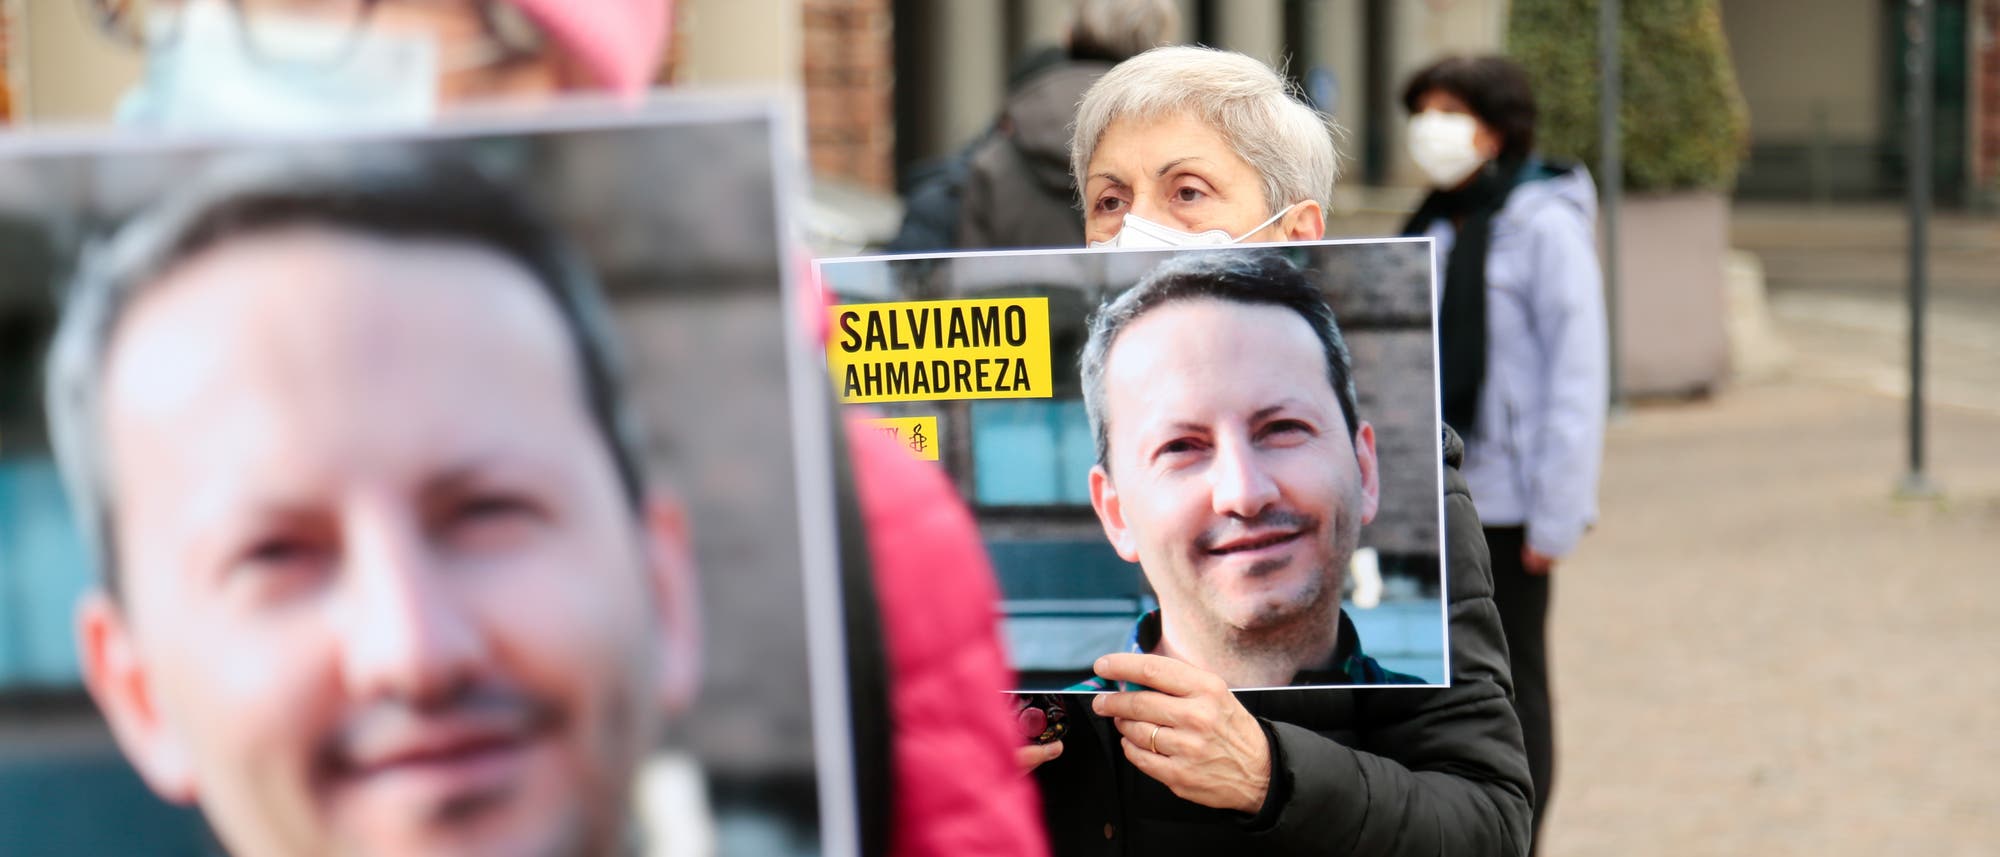 Am 28. November haben Amnesty International und Tadicali Italiani einen Sitzstreik organisiert, um den iranisch-schwedischen Arzt AhmadReza Djalali vor der Todesstrafe zu bewahren.